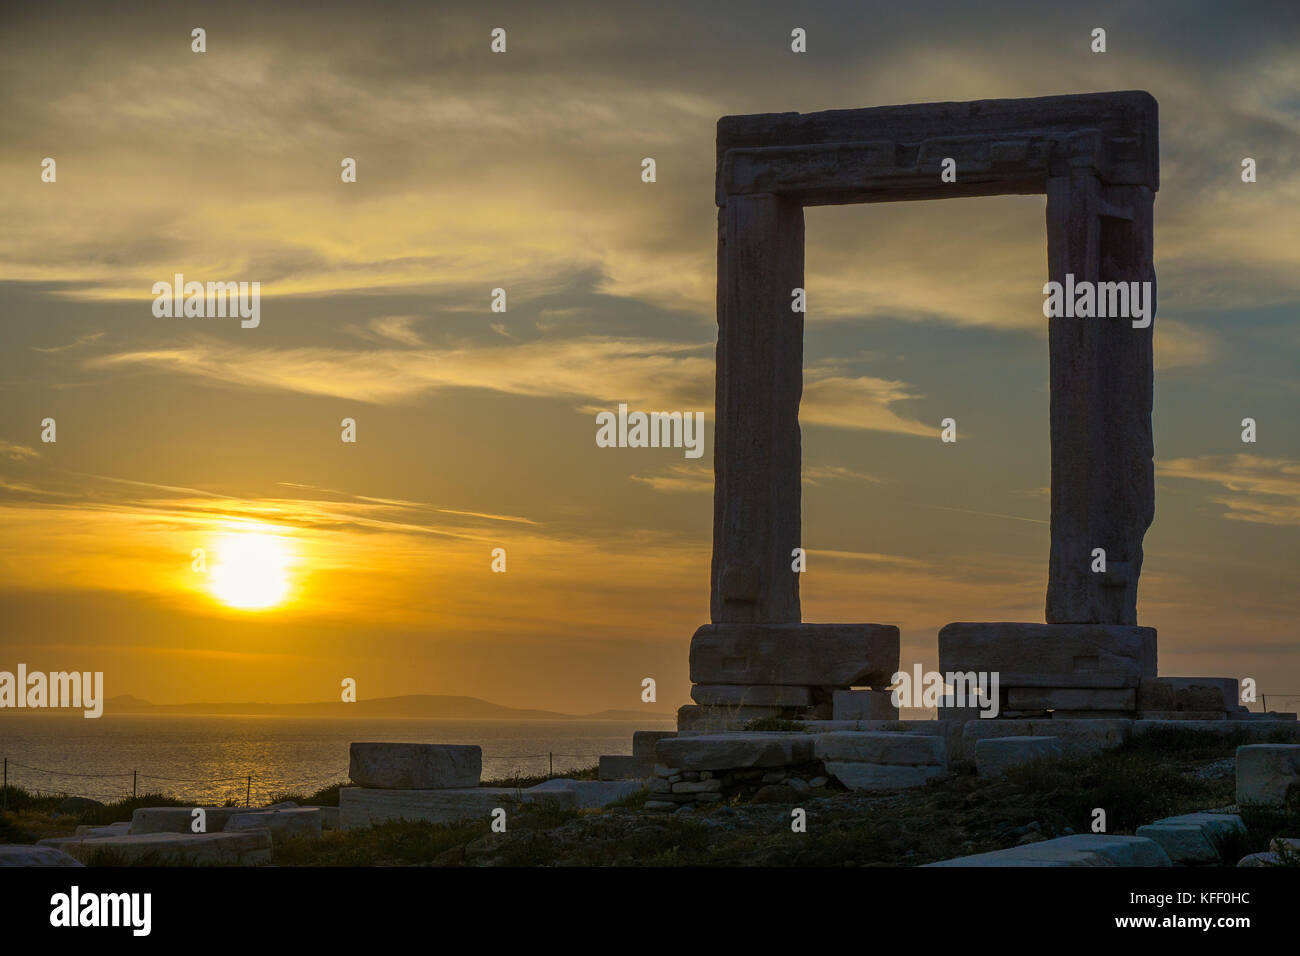 Portara de Naxos, monument de l'île de Naxos, Cyclades, Mer Égée, Grèce Banque D'Images